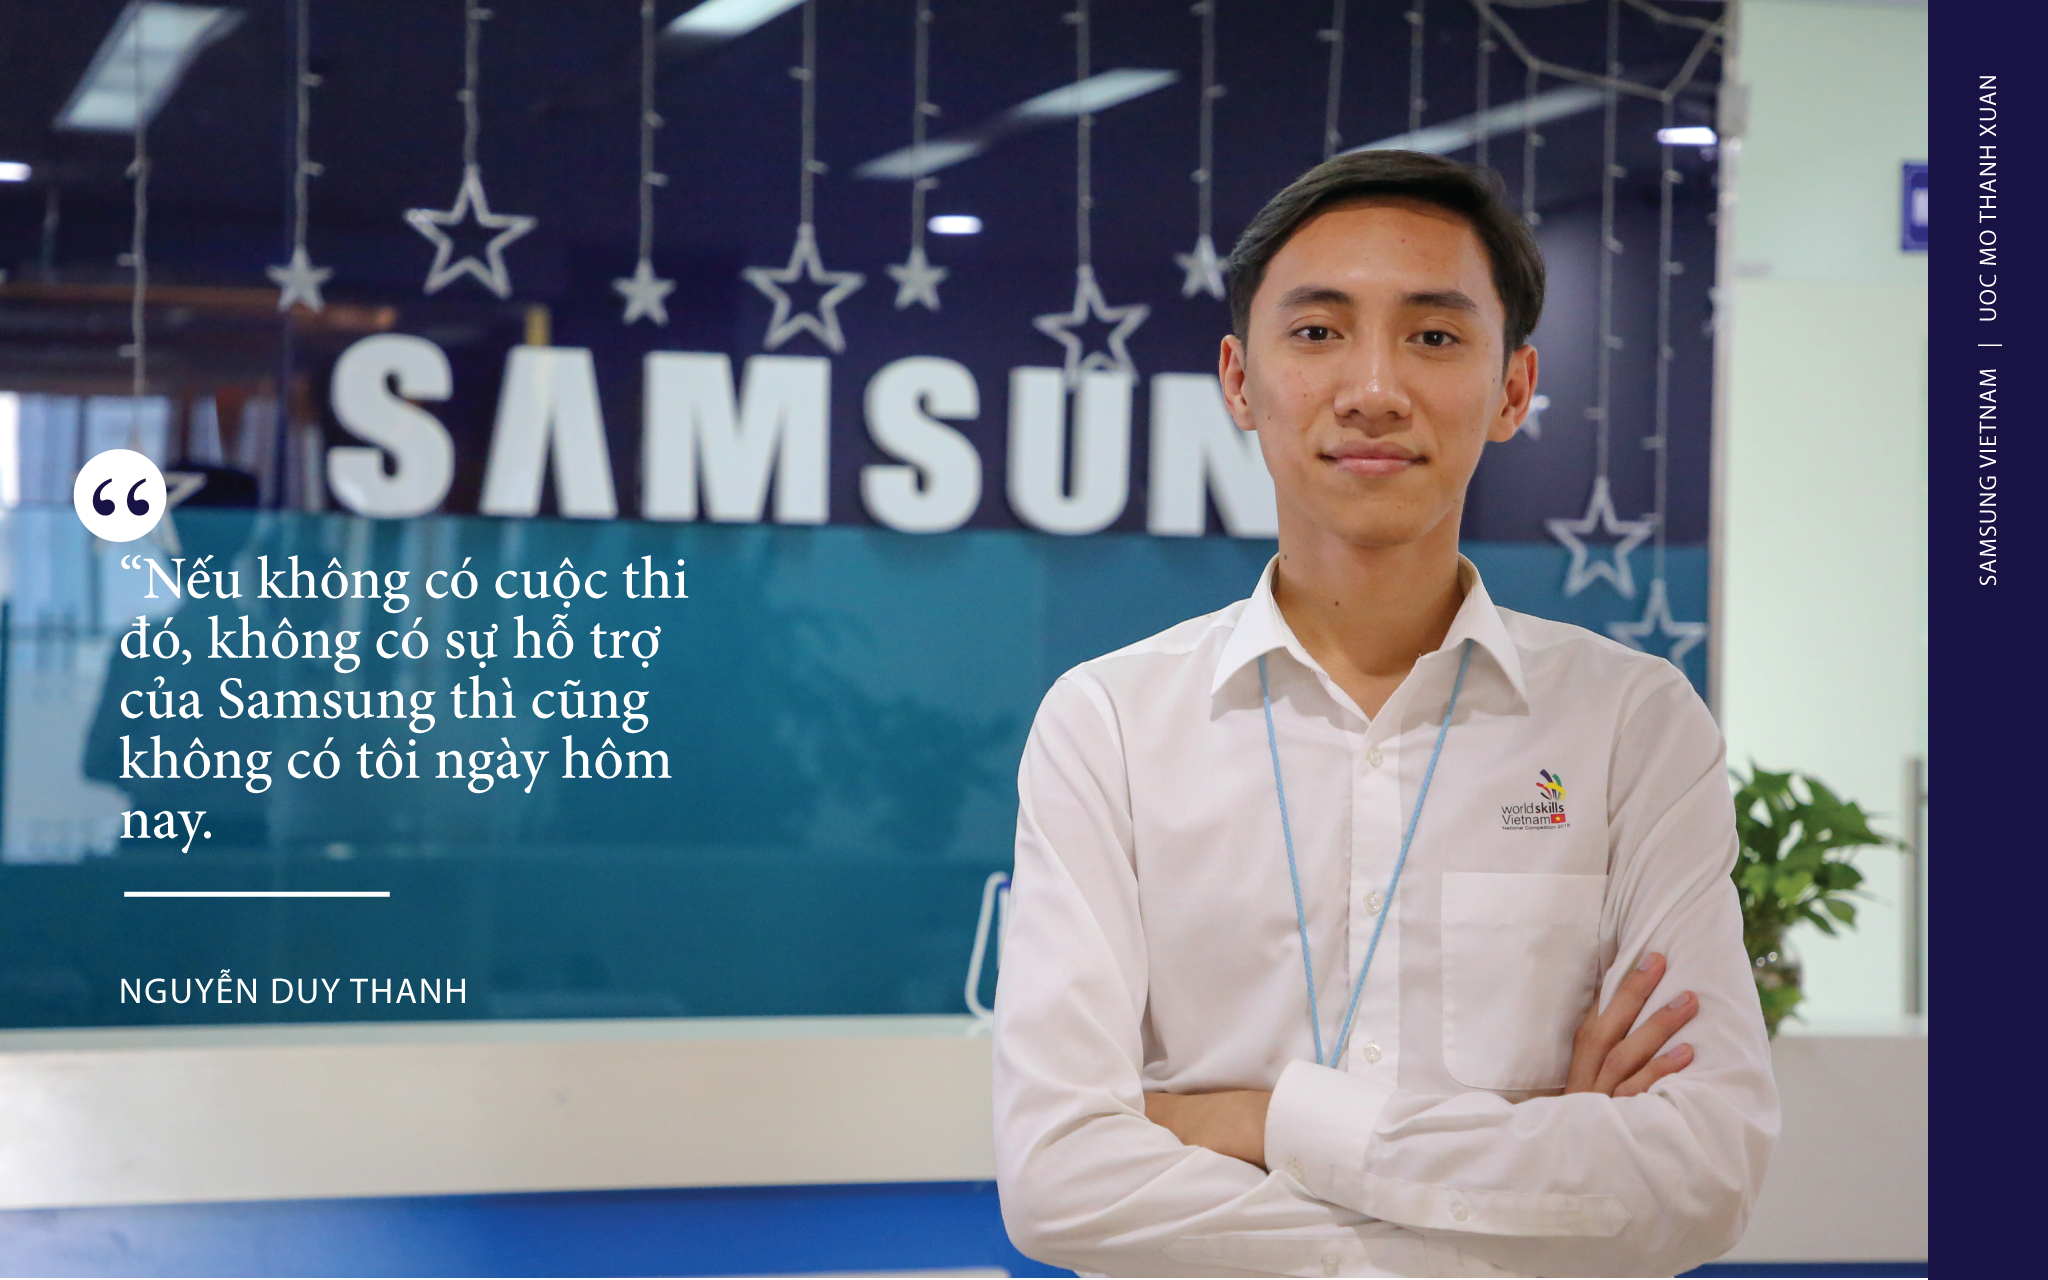 Nguyễn Duy Thanh hiện đang là kỹ sư làm việc tại Trung tâm Nghiên cứu Phát triển điện thoại di động của Samsung. (Ảnh Minh Sơn)